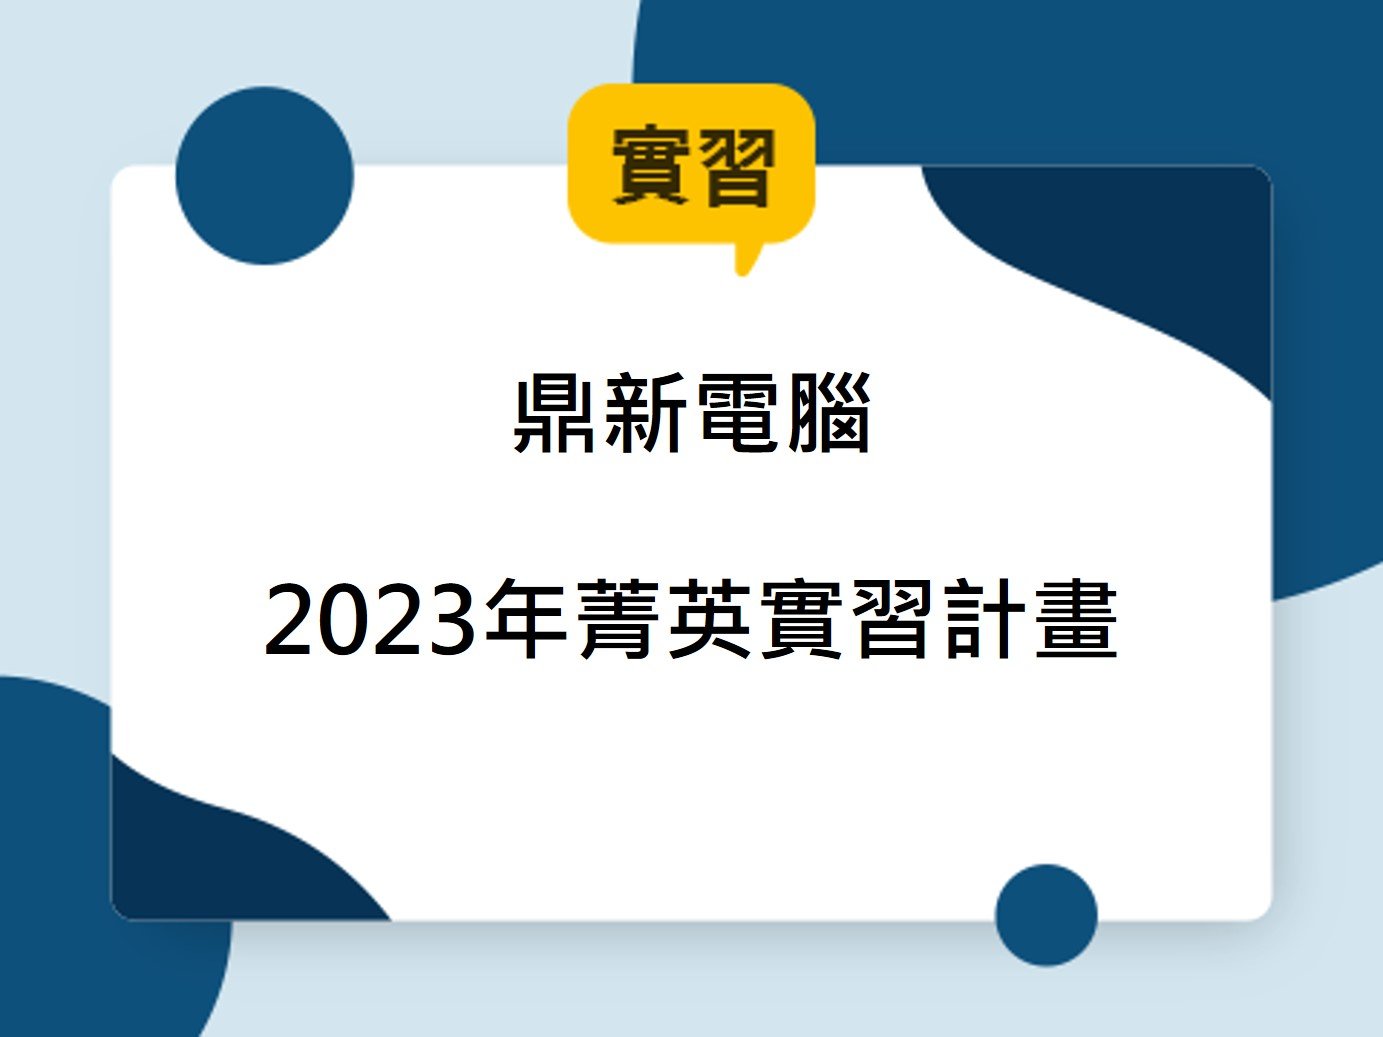 【實習資訊】鼎新電腦 2023年菁英實習計畫報名開始(~2022/11/11(五)截止)